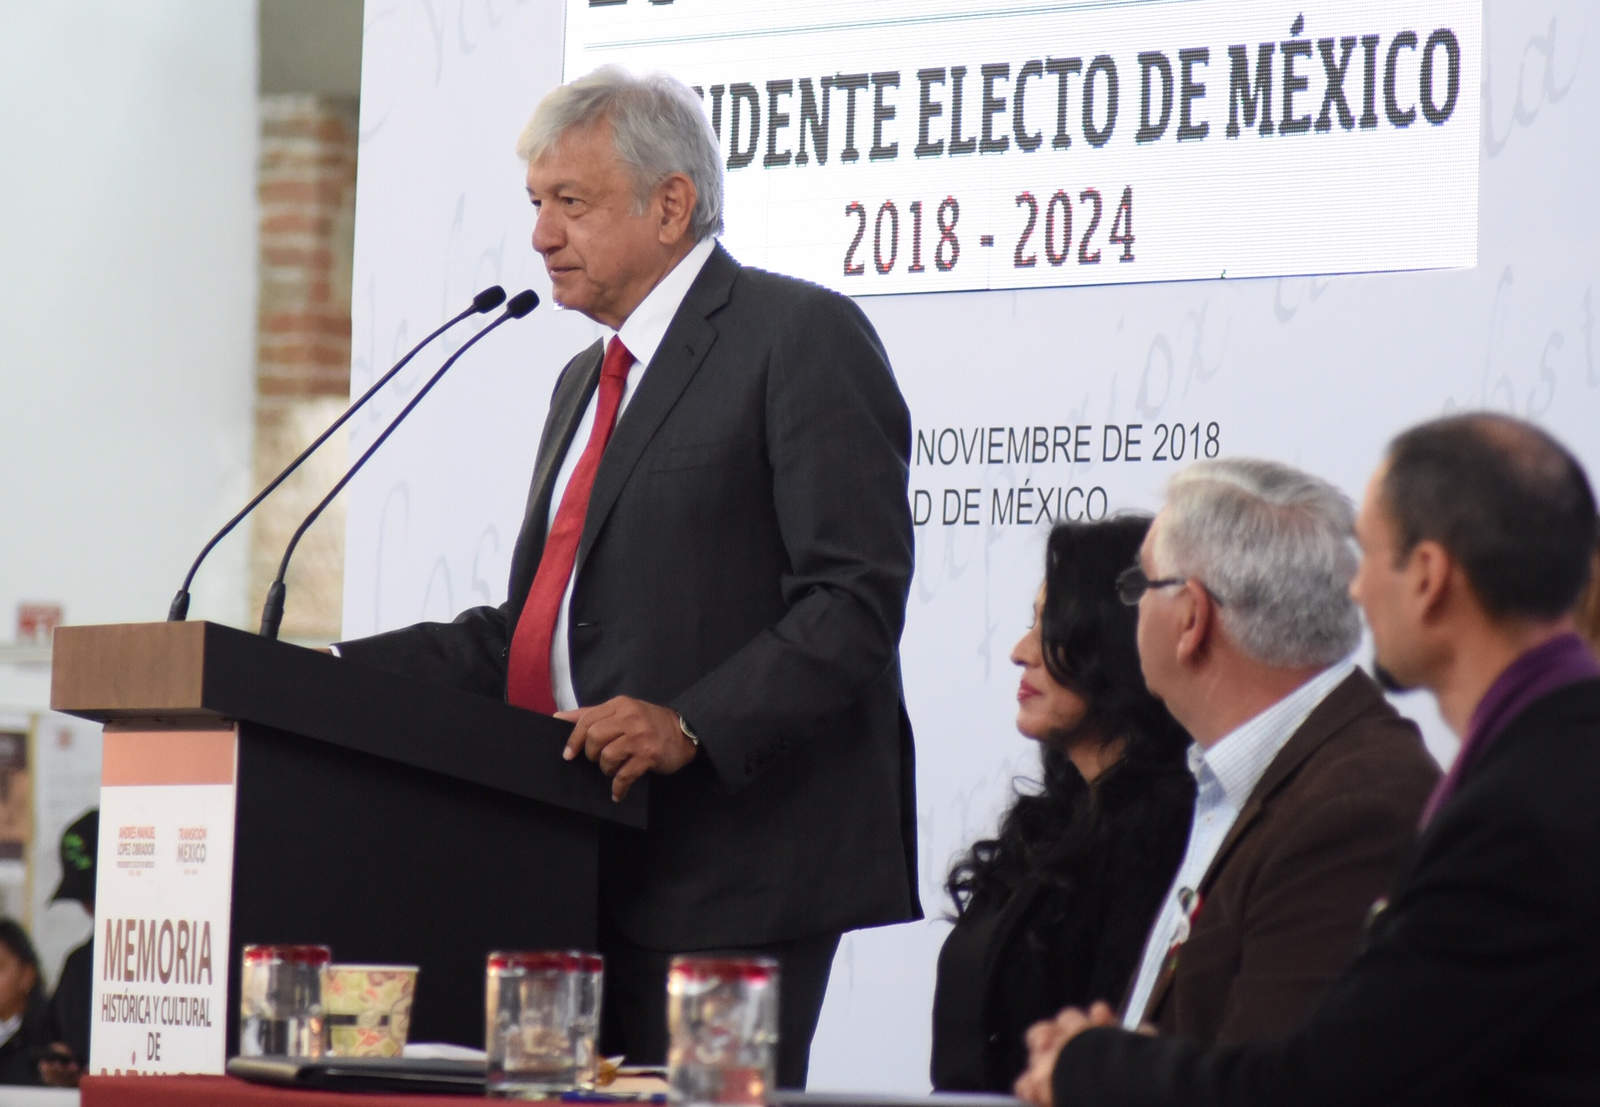 Más de dos tercios de la población mexicana tiene una buena o muy buena opinión del presidente electo Andrés Manuel López Obrador -quien asumirá la Presidencia el 1 de diciembre-, según una encuesta publicada hoy. (ARCHIVO)